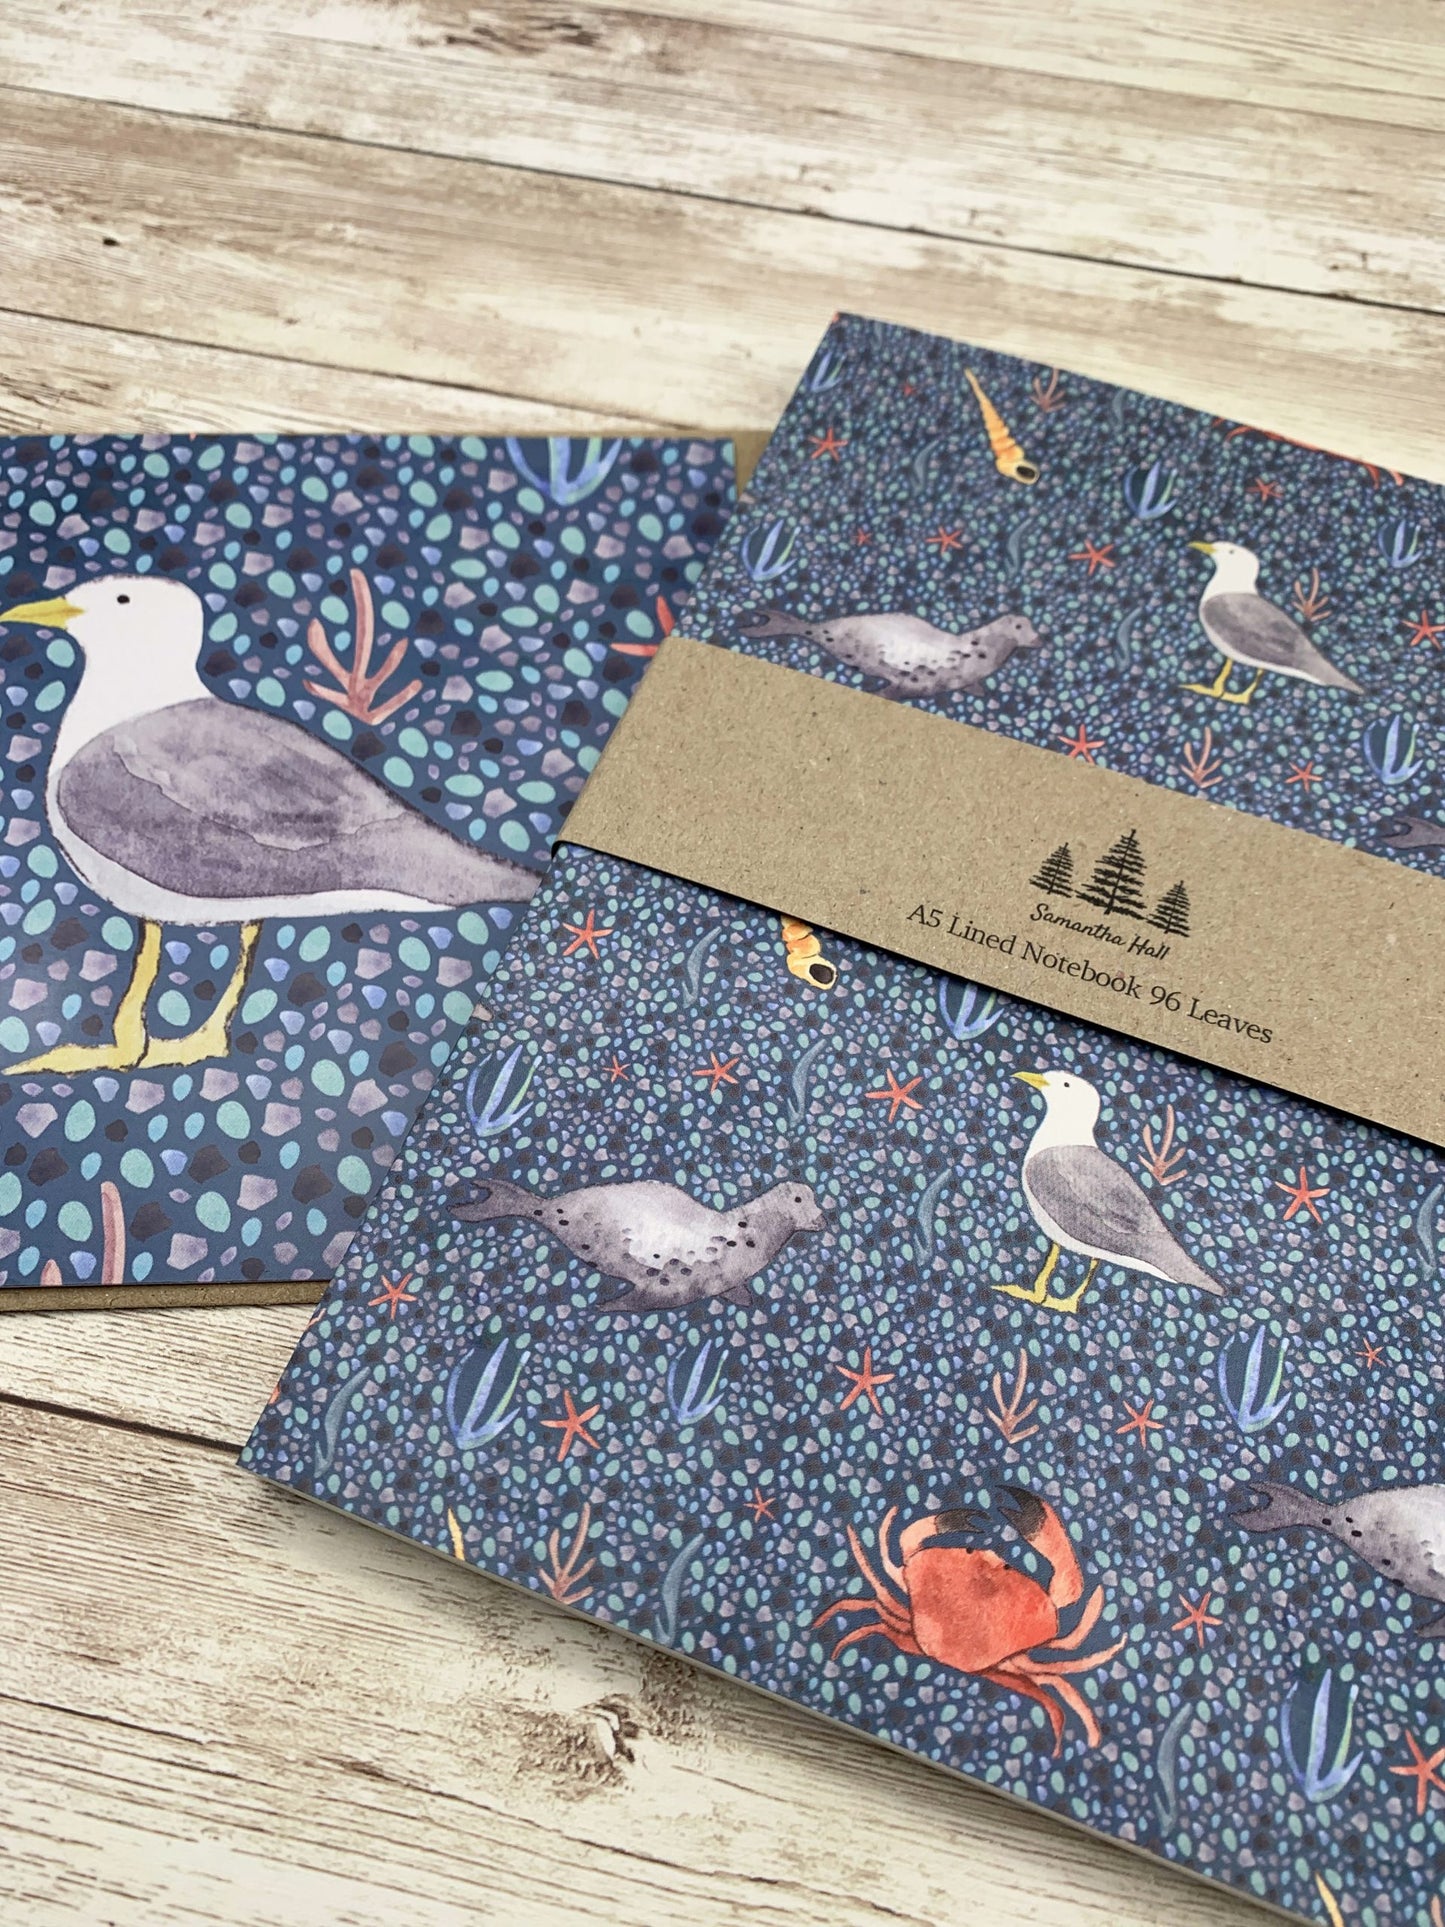 Coastal notebook gift set